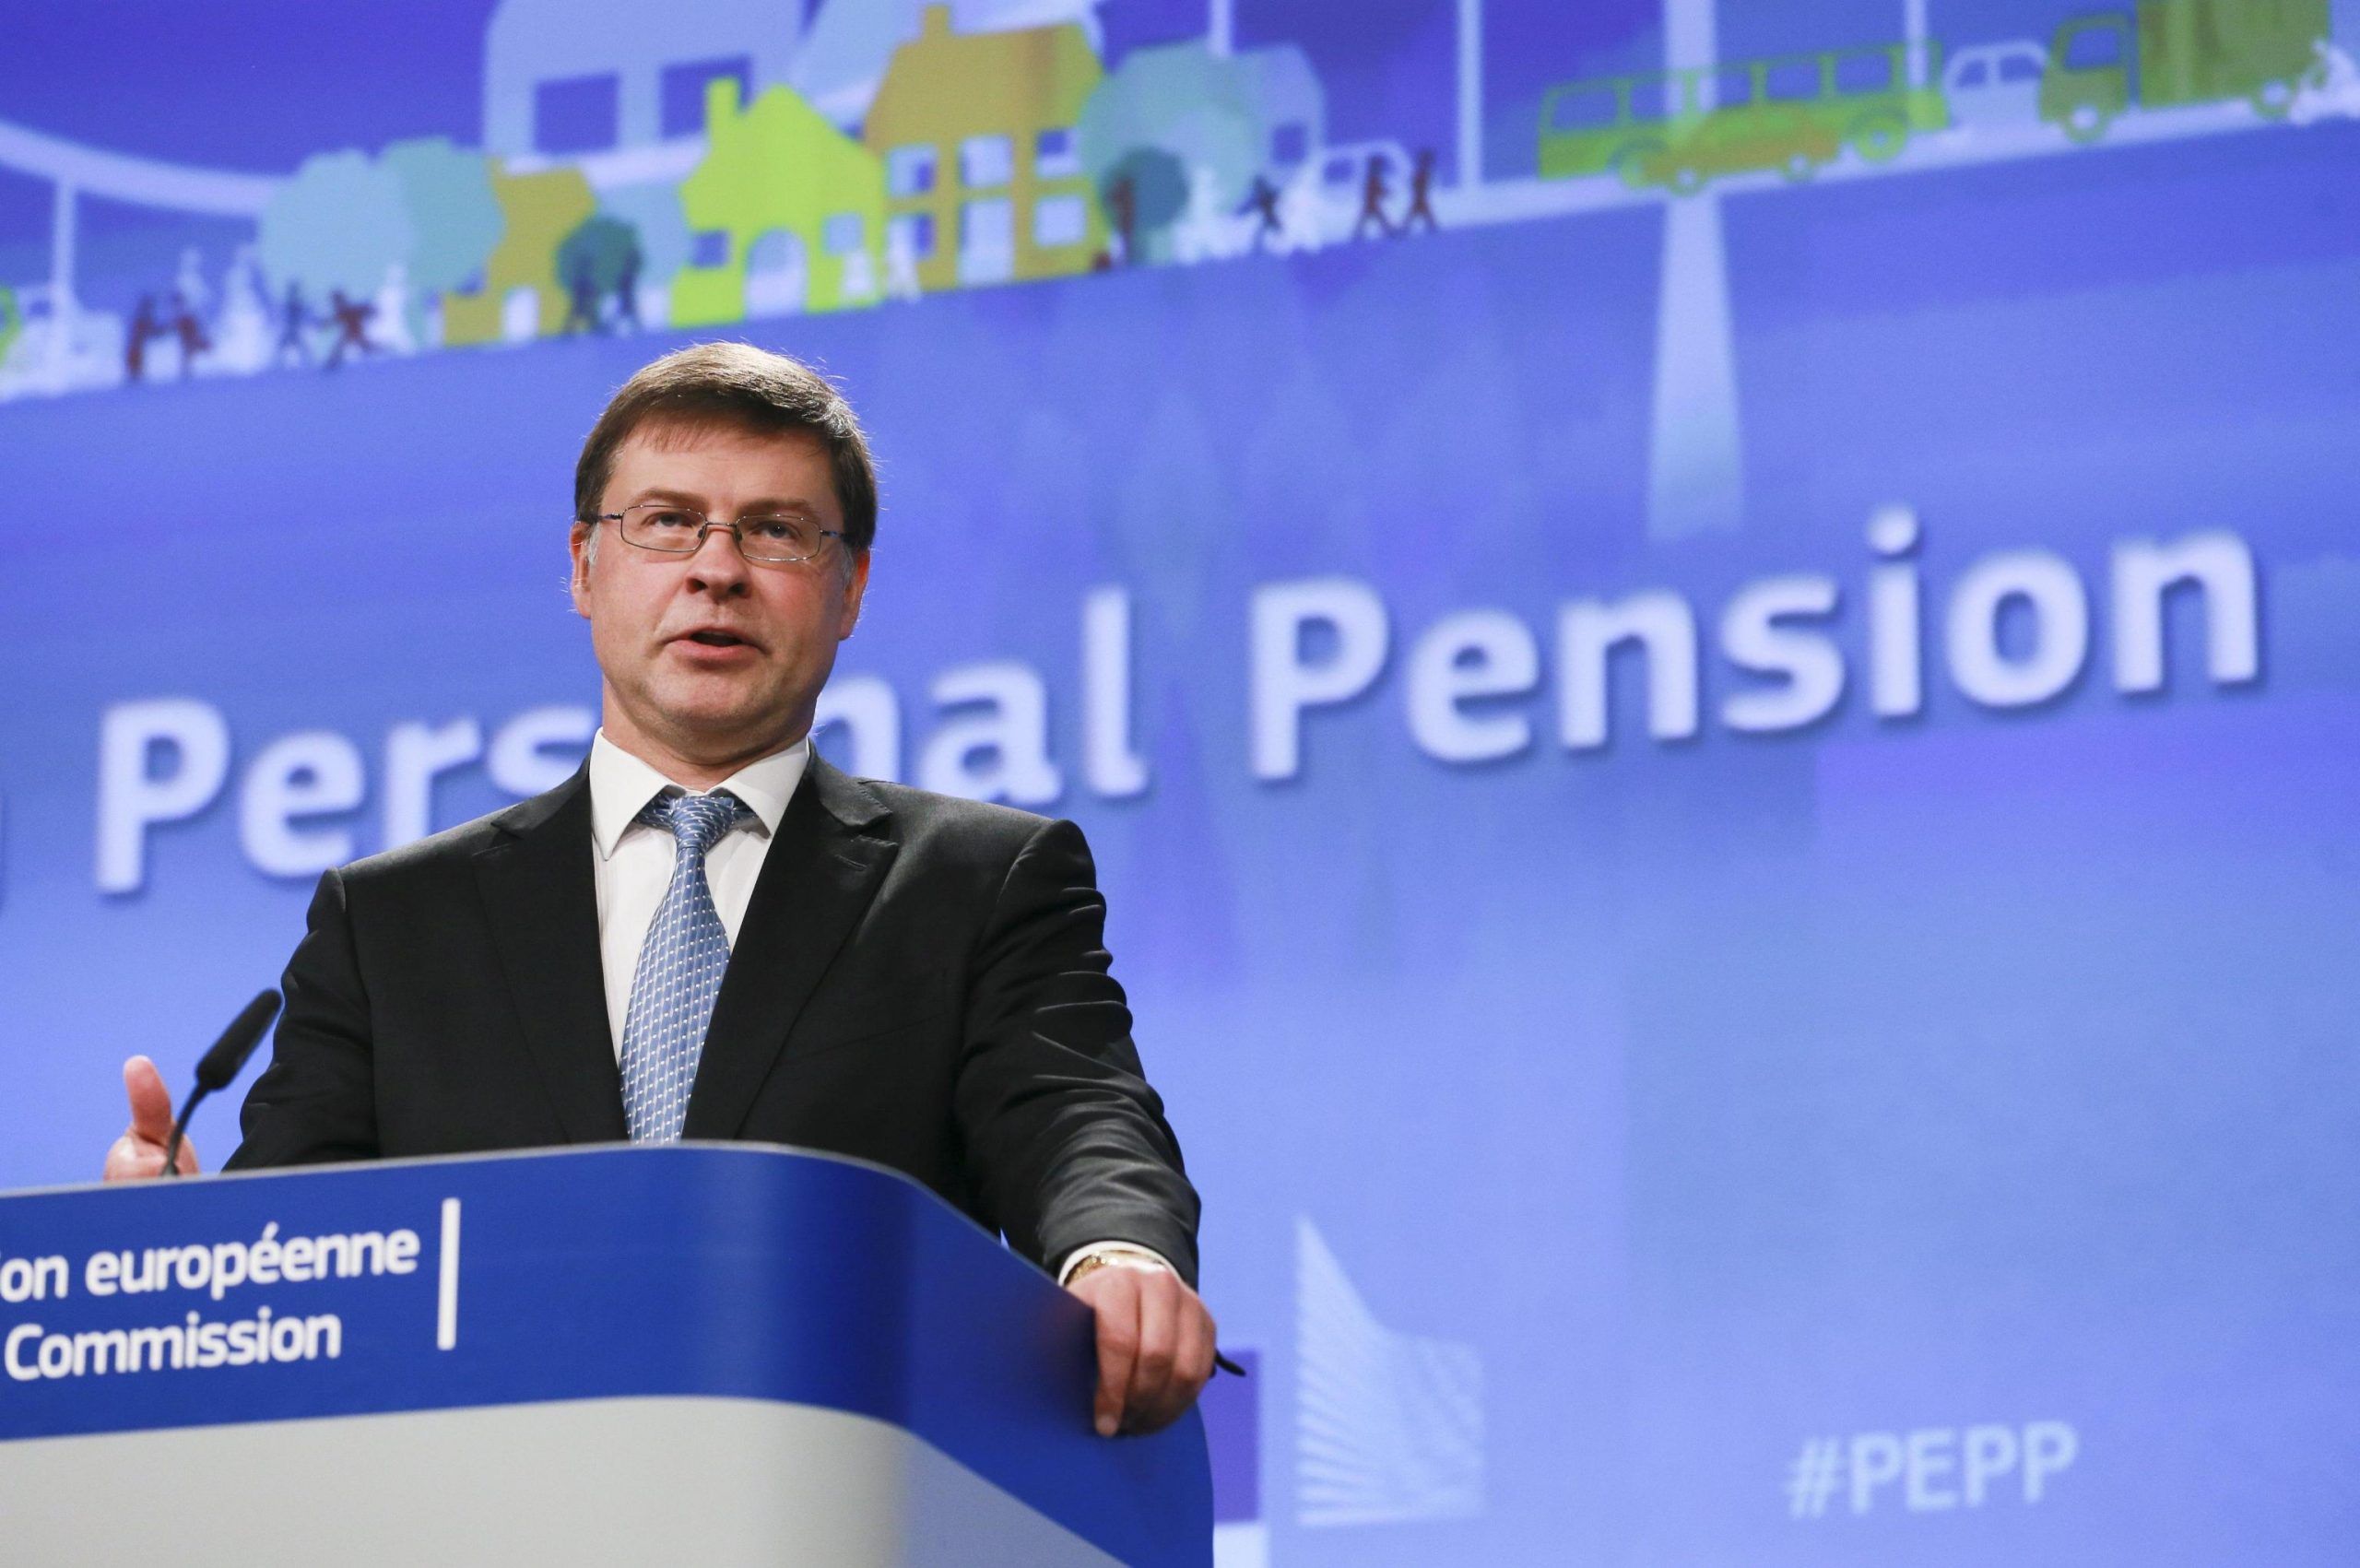 Pensioni novità ultima ora: arrivano i fondi pensione integrativi europei